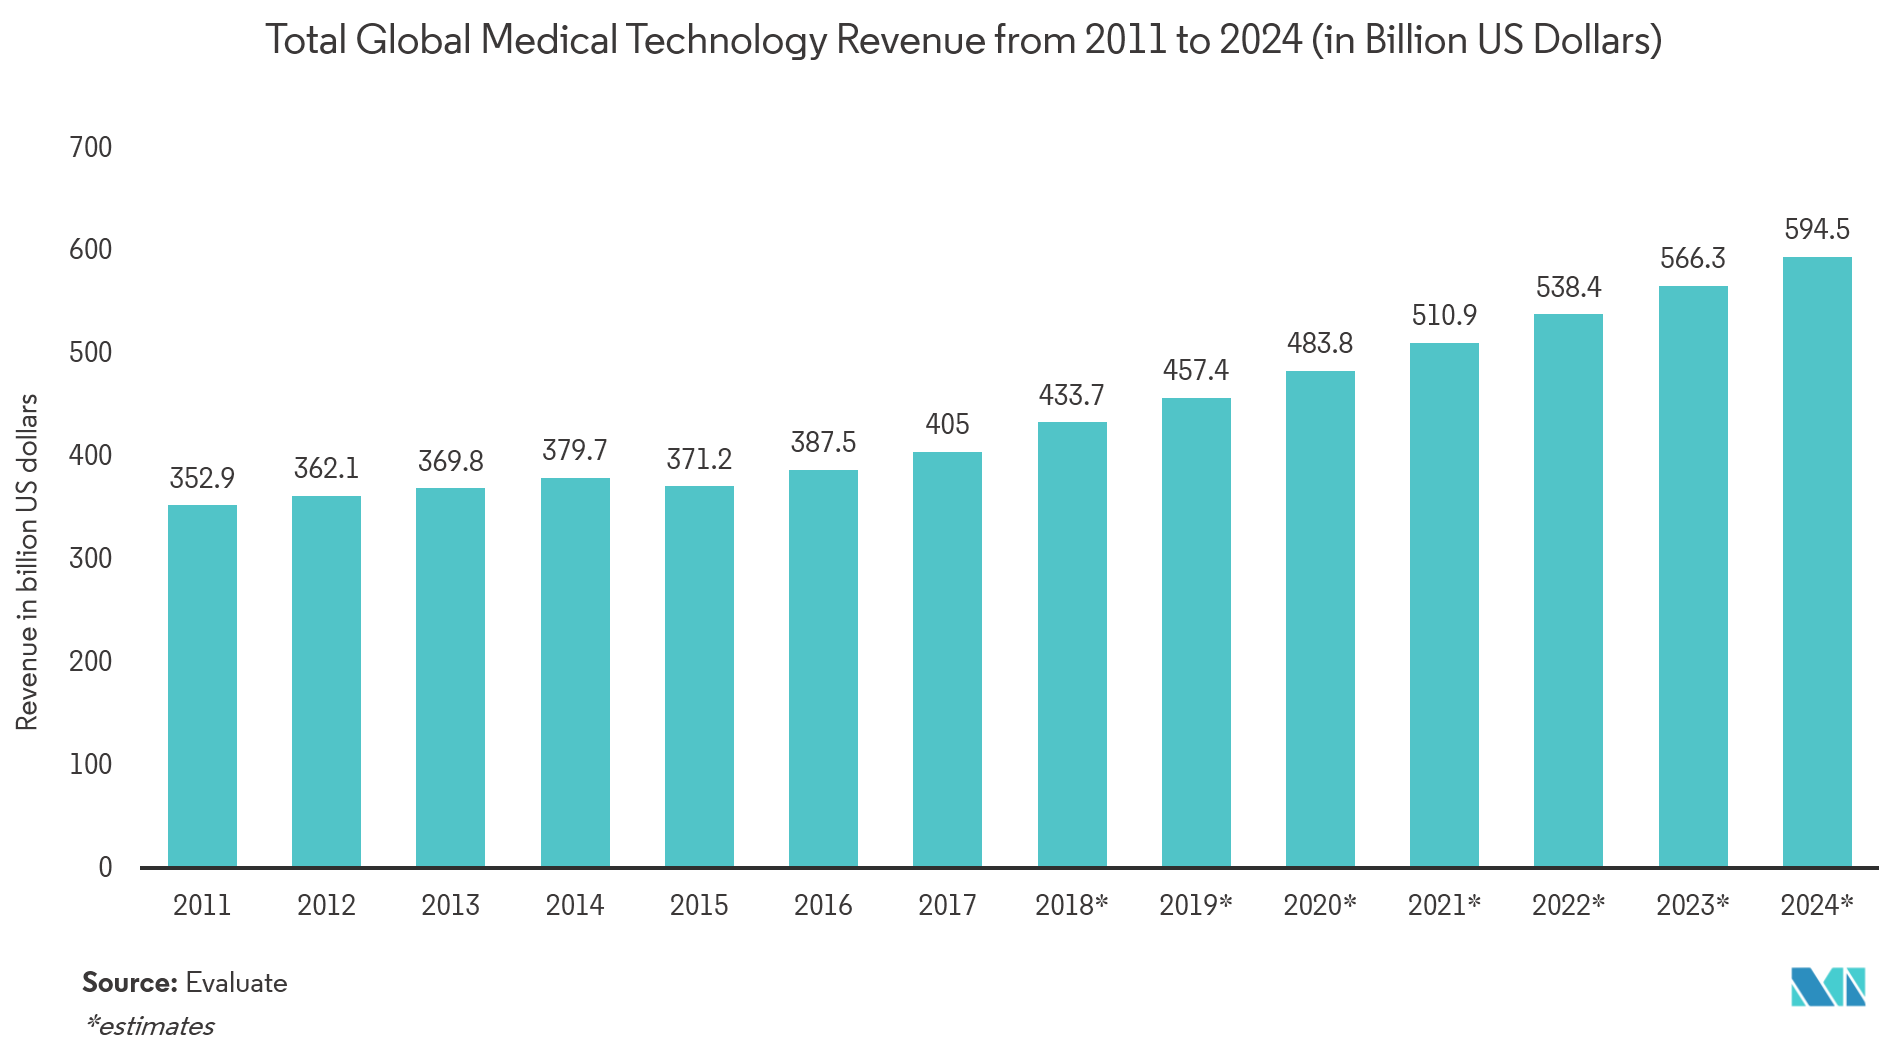 Mercado de Sensores Biomédicos Receita Total Global de Tecnologia Médica de 2011 a 2024 (em bilhões de dólares americanos)